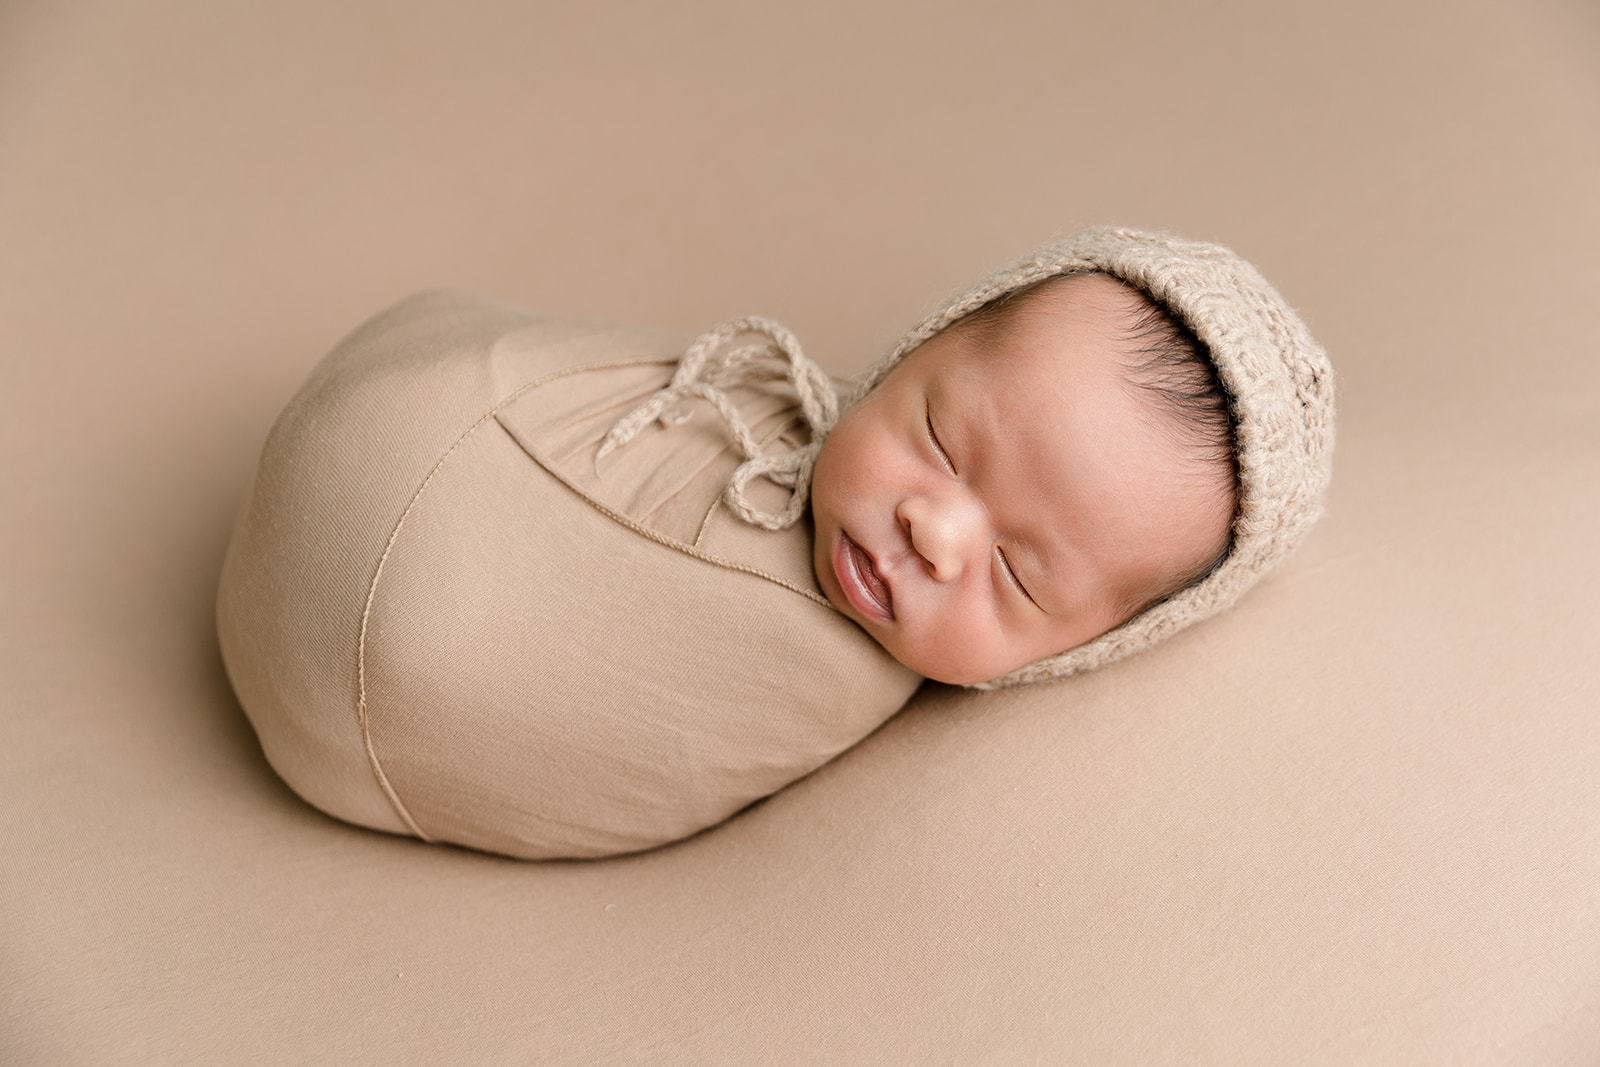 A newborn baby sleeps in a brown onesie